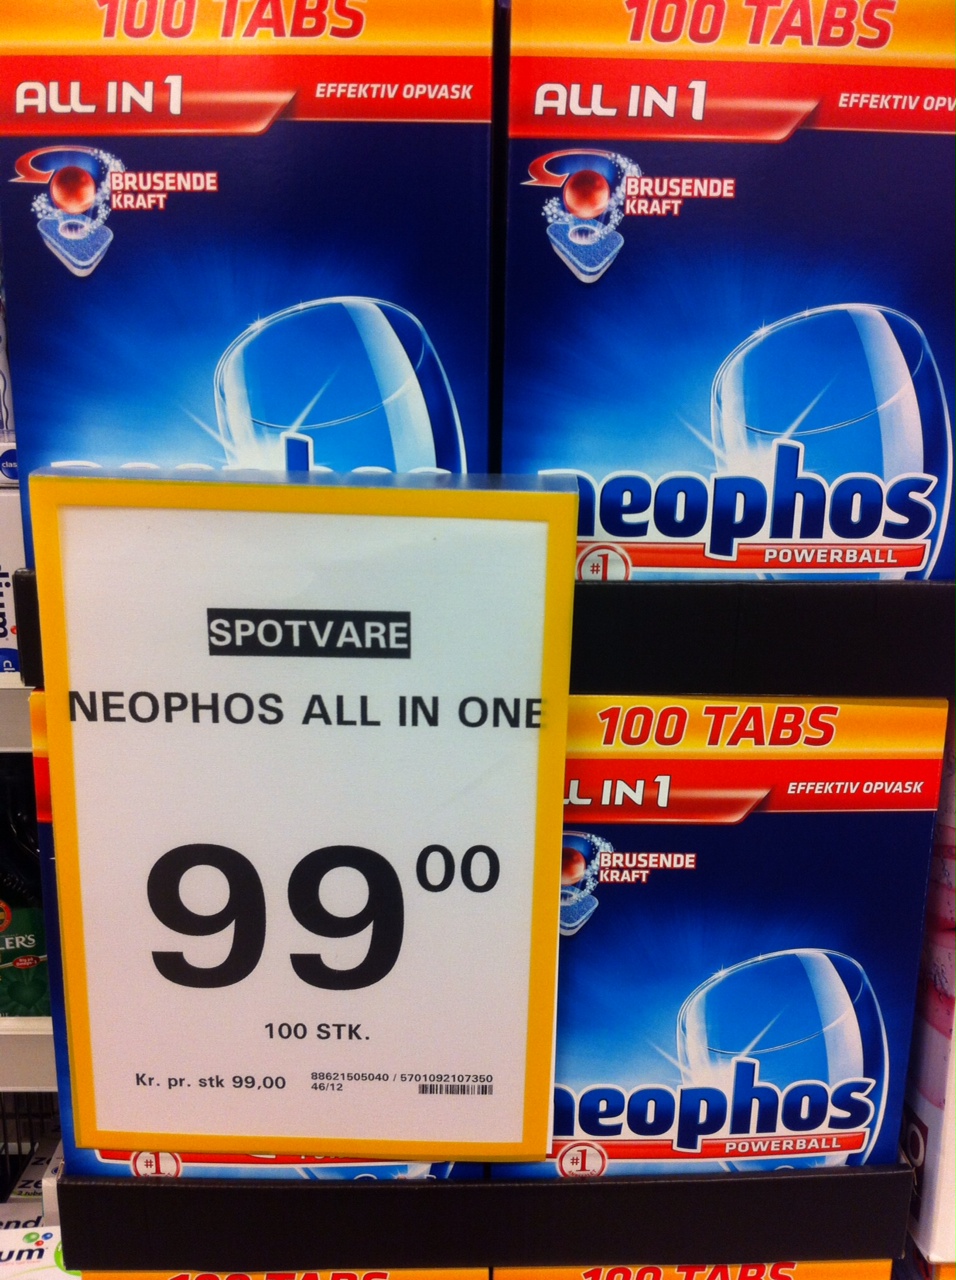 Se dig for når du køber Neophos opvasketabs